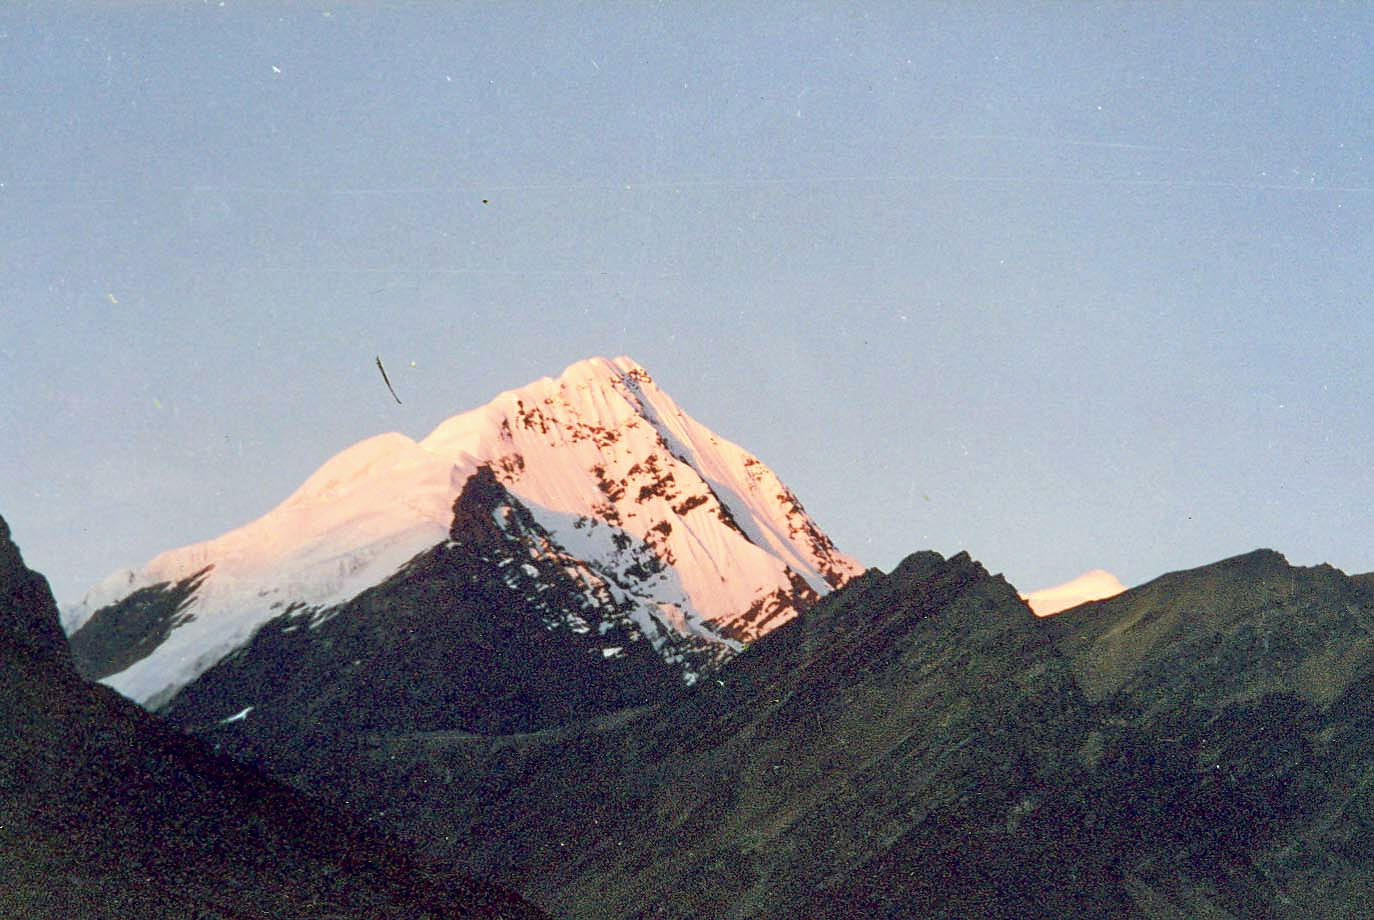 Gorichen Peak Overview